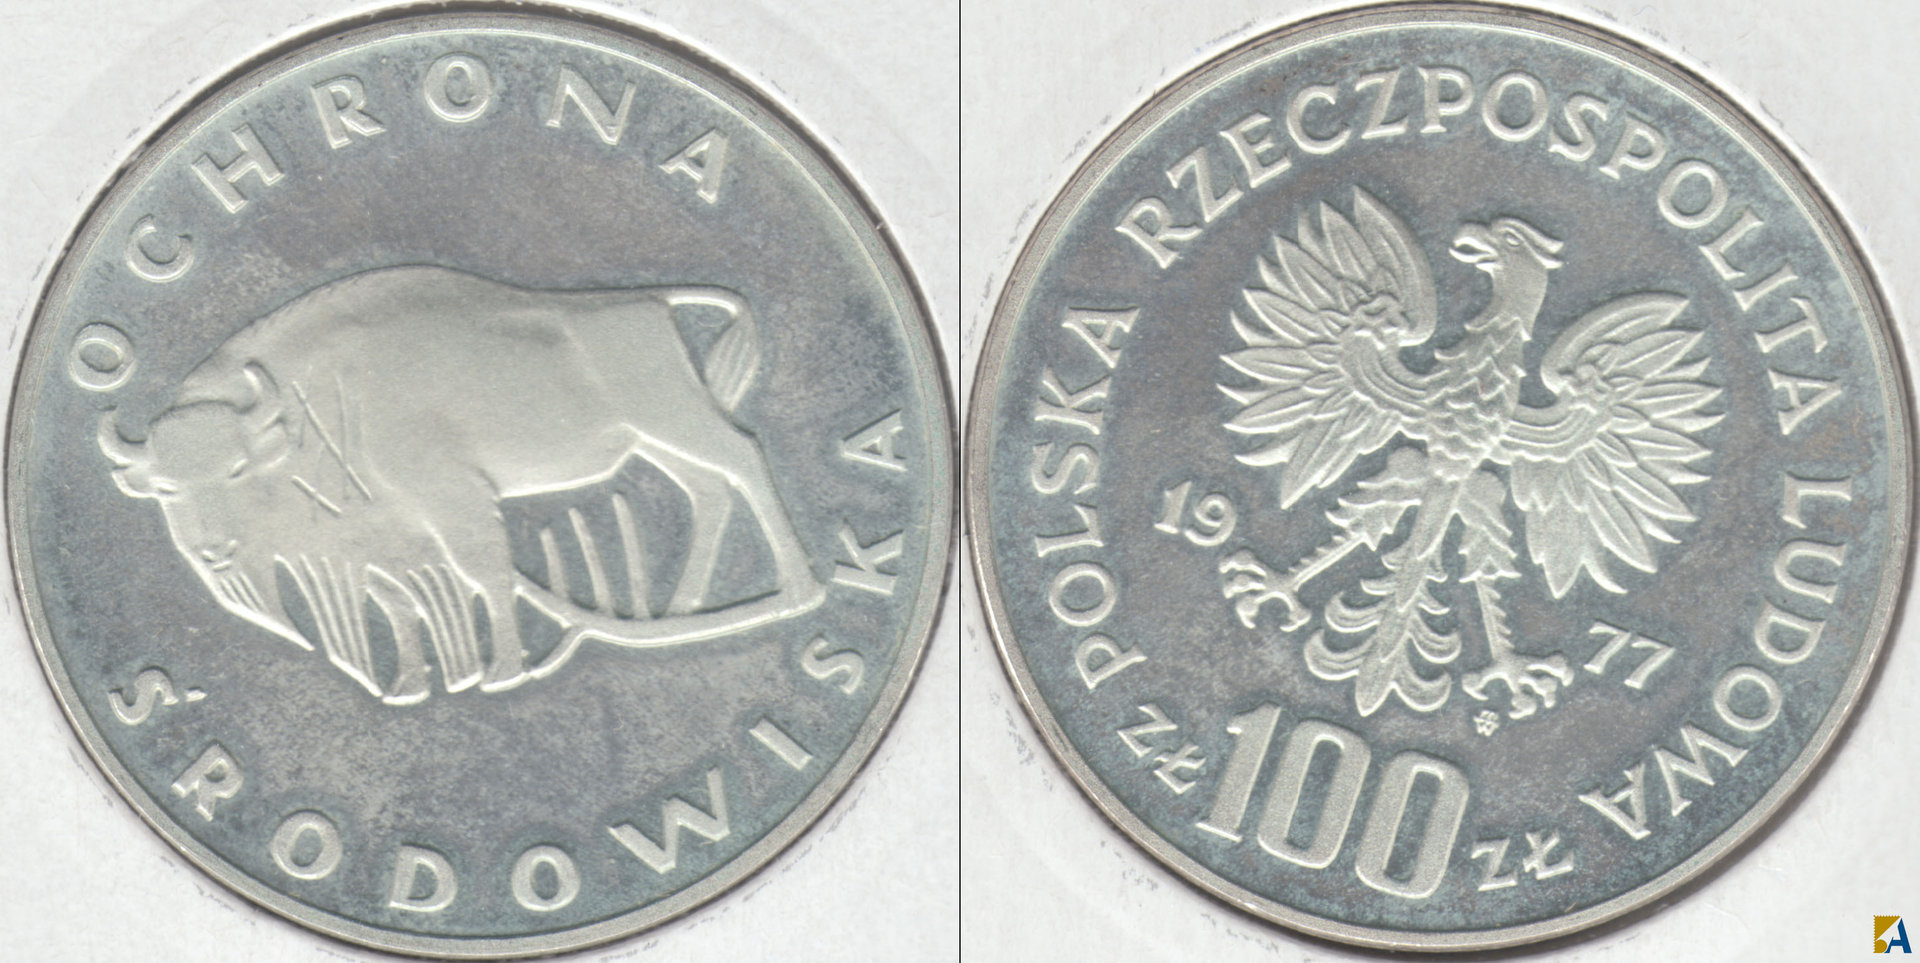 POLONIA - POLSKA. 100 ZLOTYCH DE 1977. PLATA 0.625. (6)